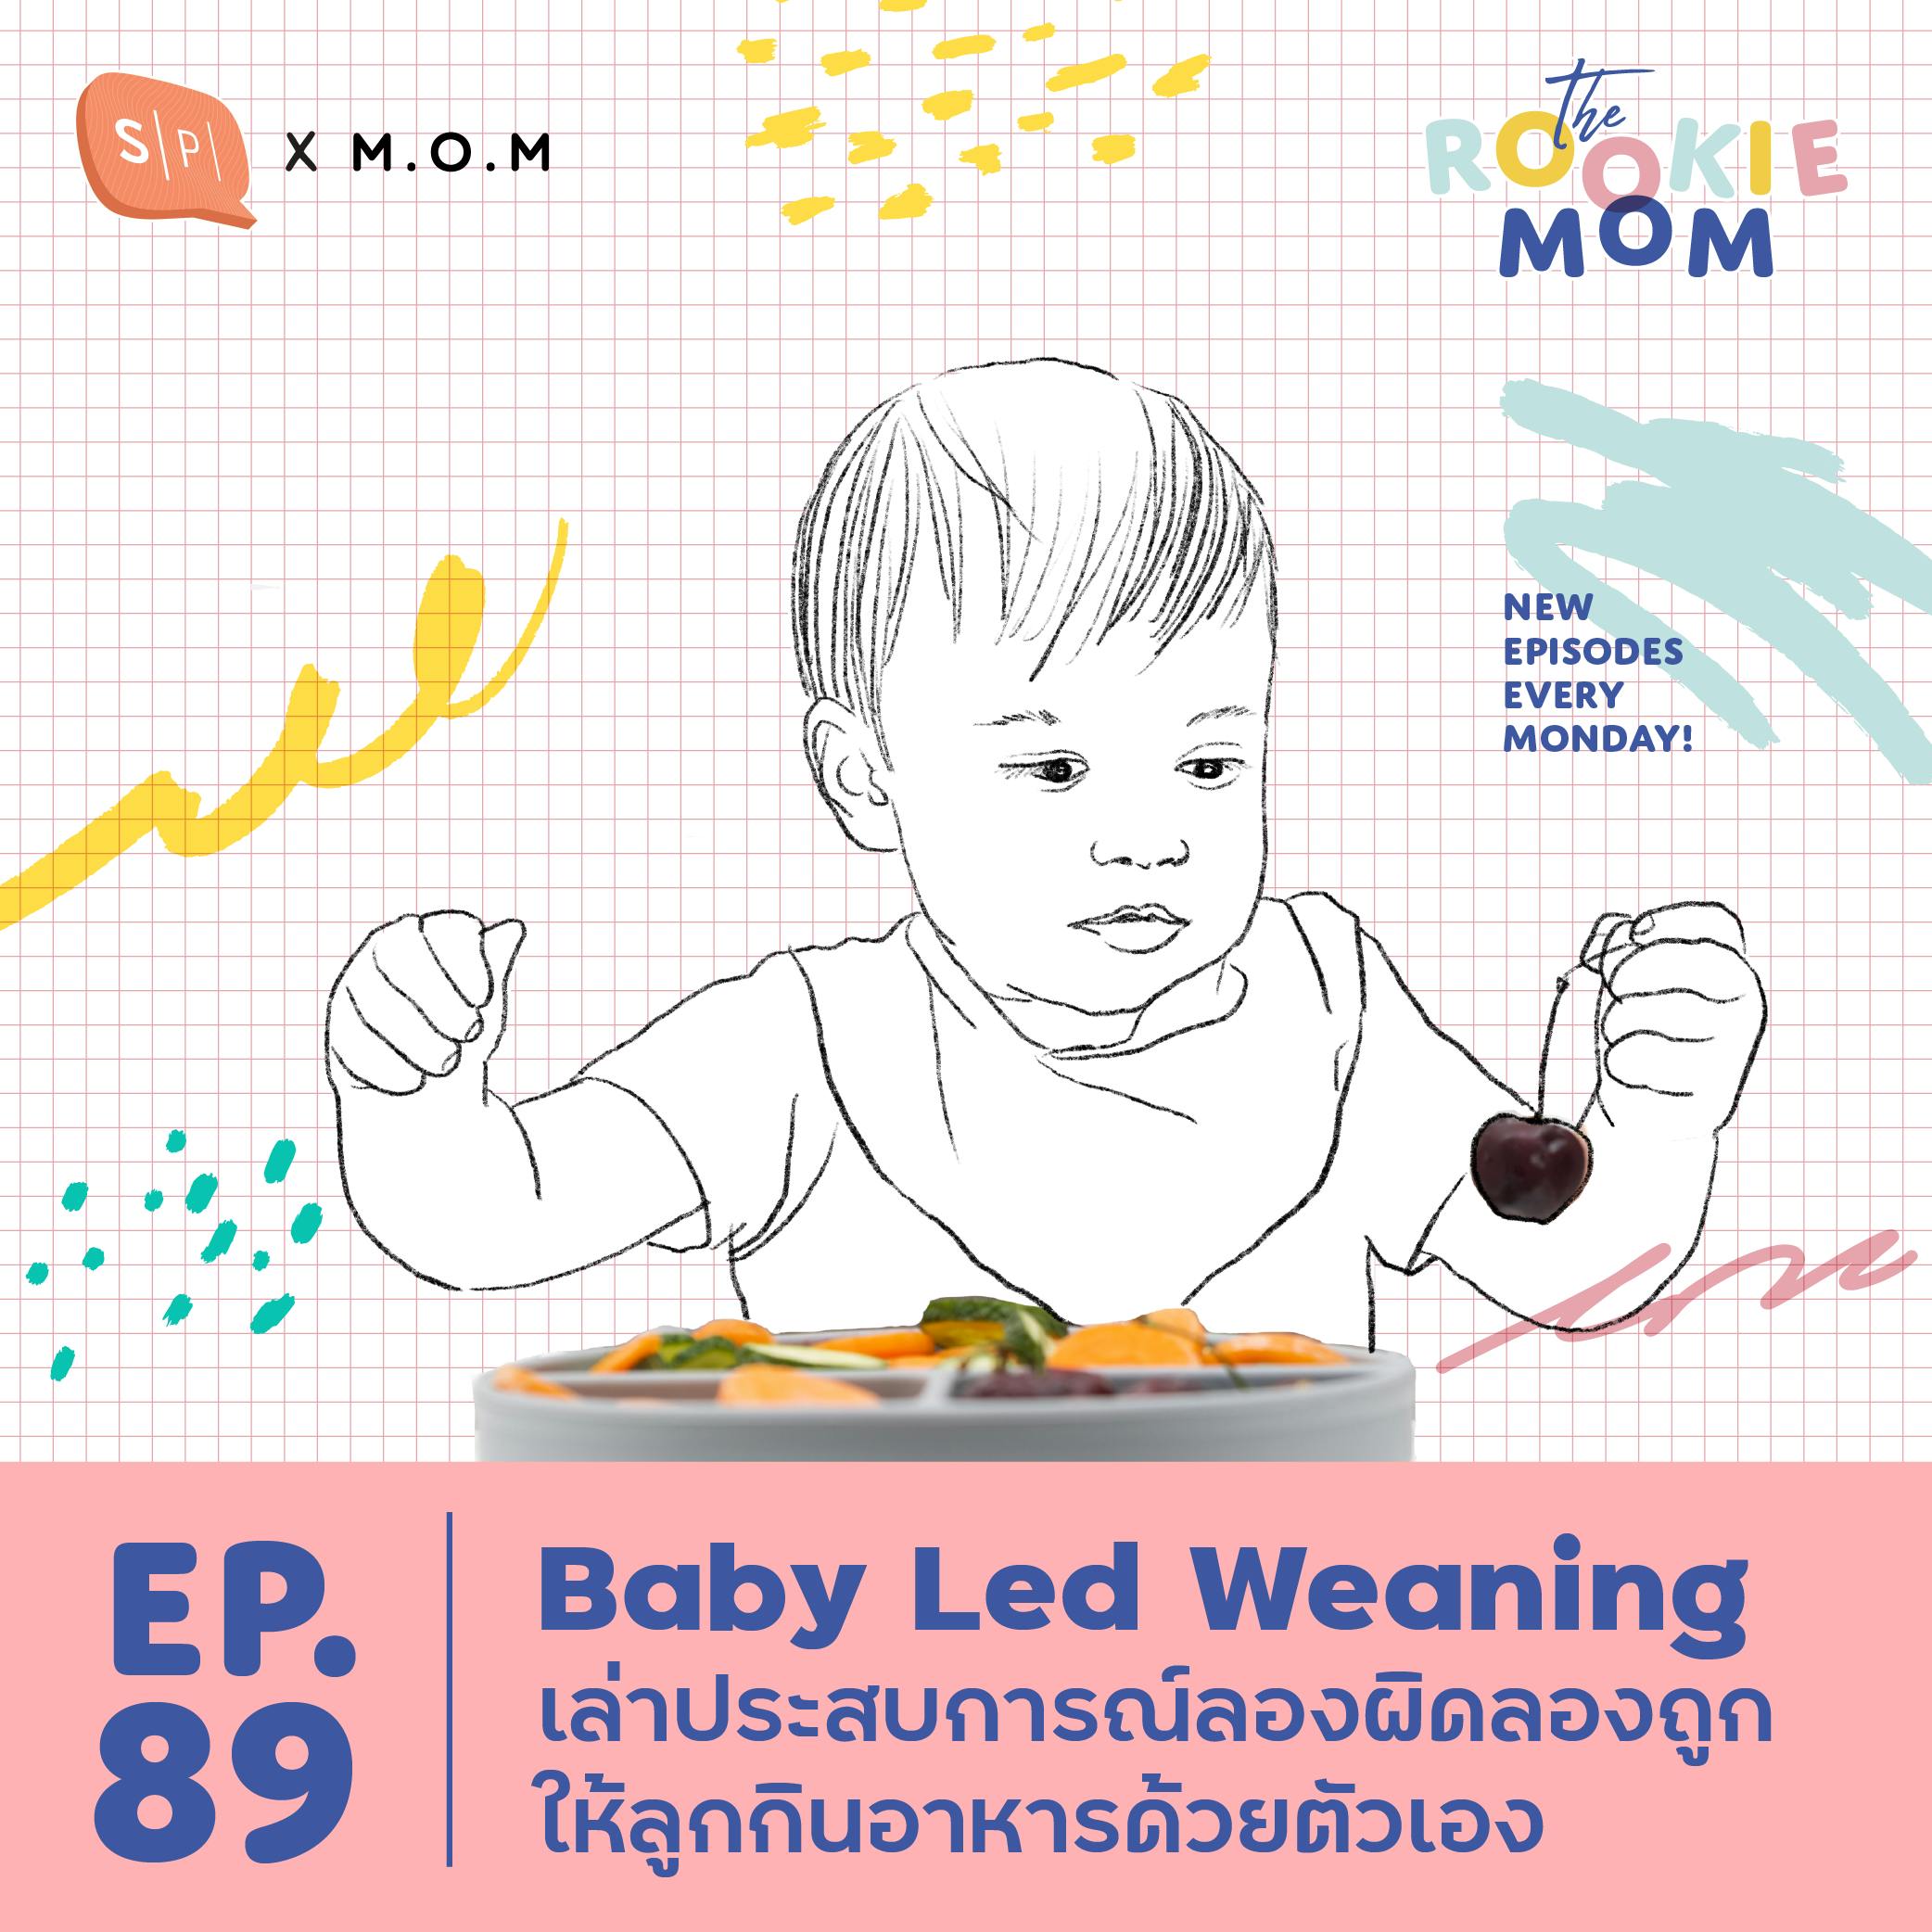 Baby Led Weaning เล่าประสบการณ์ลองผิดลองถูกให้ลูกกินอาหารด้วยตัวเอง | EP89